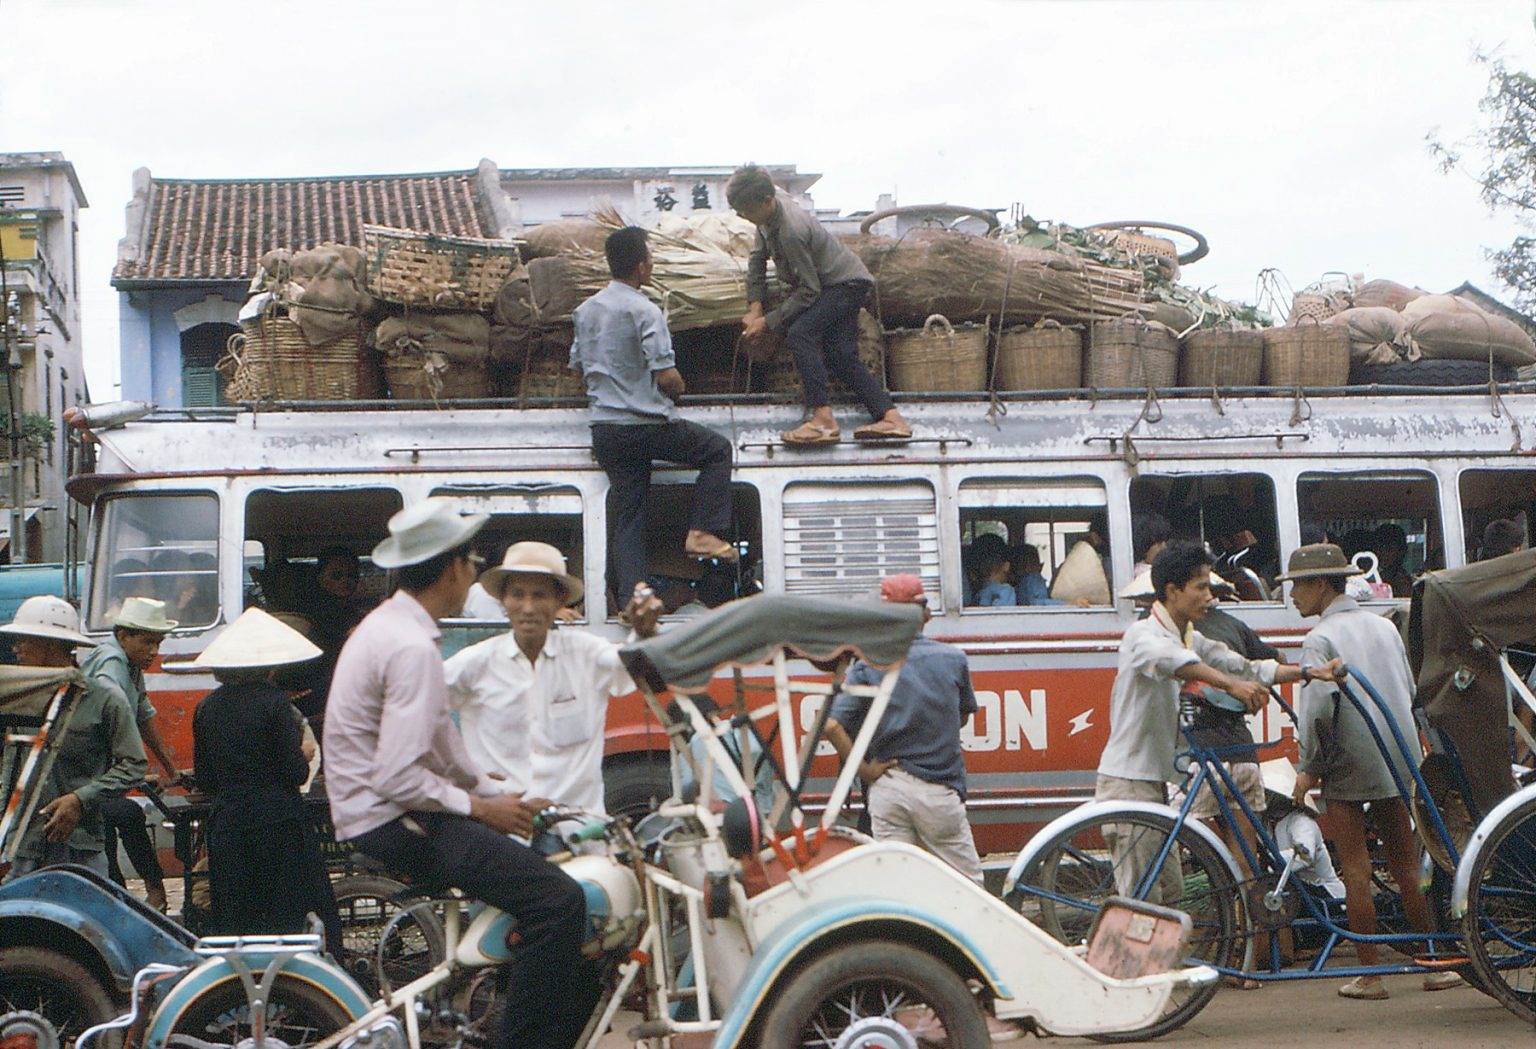 Loạt Ảnh Màu Về Sài Gòn - Chợ Lớn 1966-1967 Qua Ống Kính Nhiếp Ảnh Gia ...